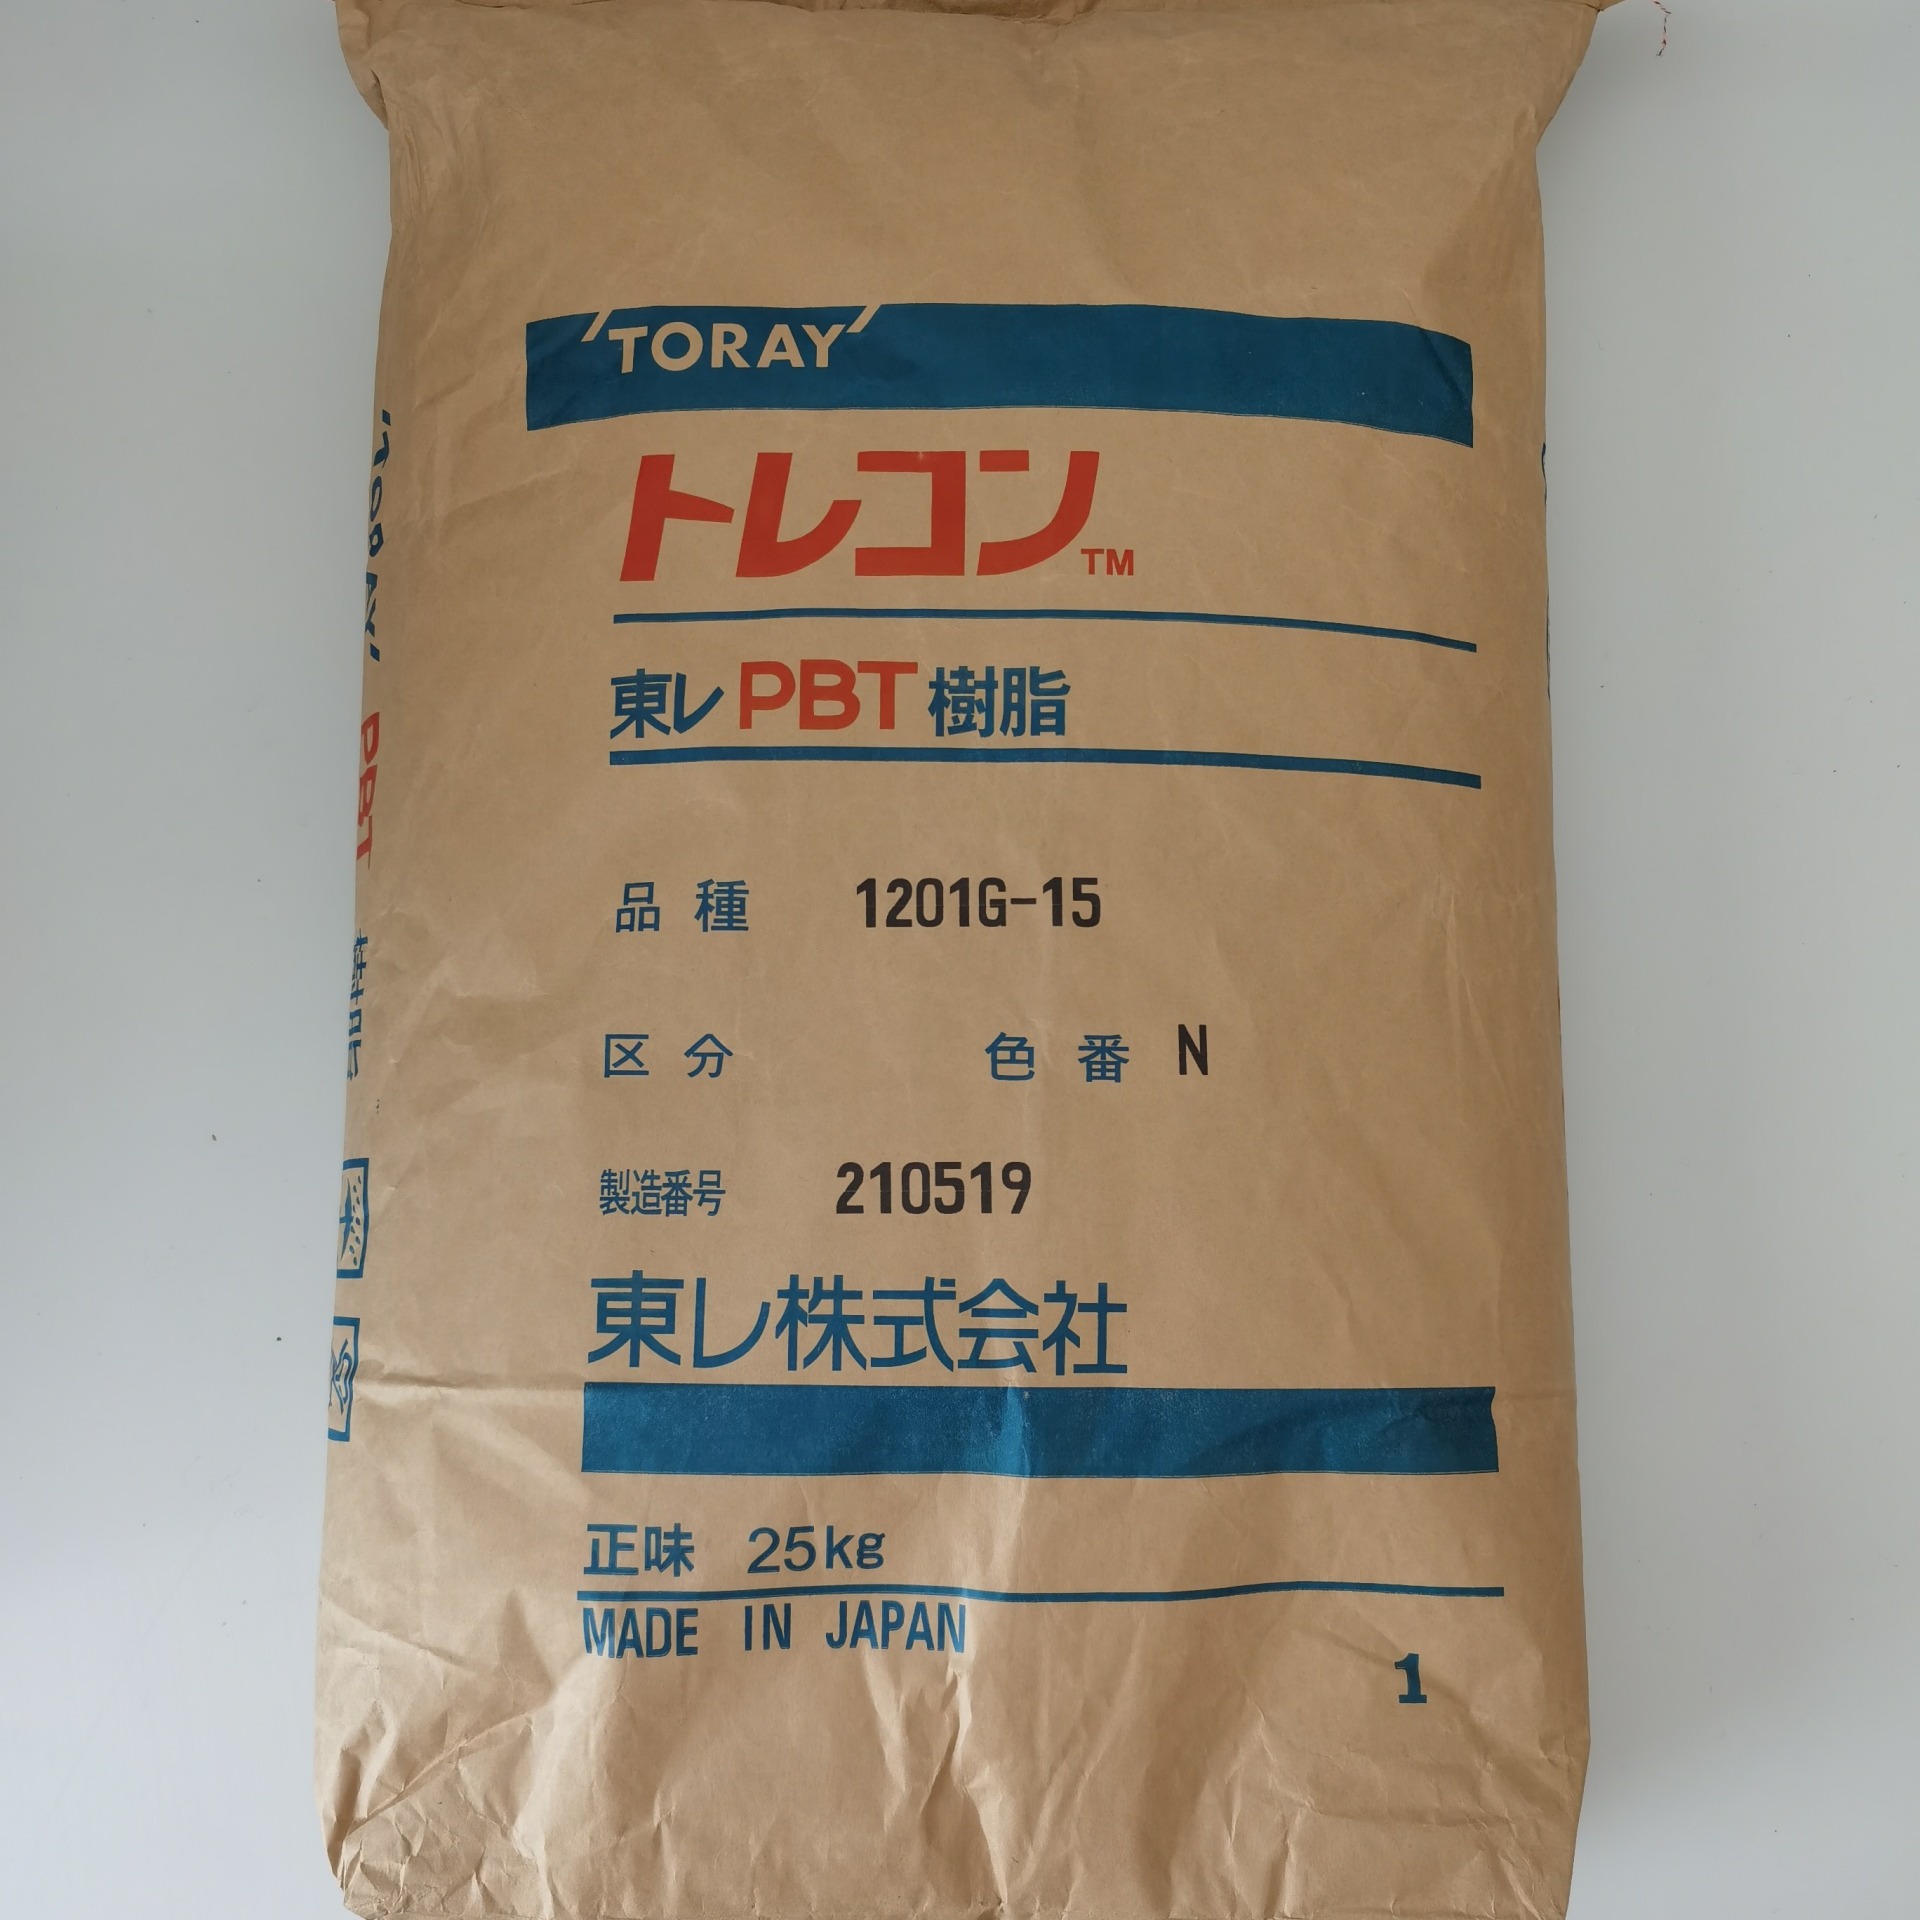 PBT日本东丽 Toray 1101G-X08 玻纤增强 低翘曲